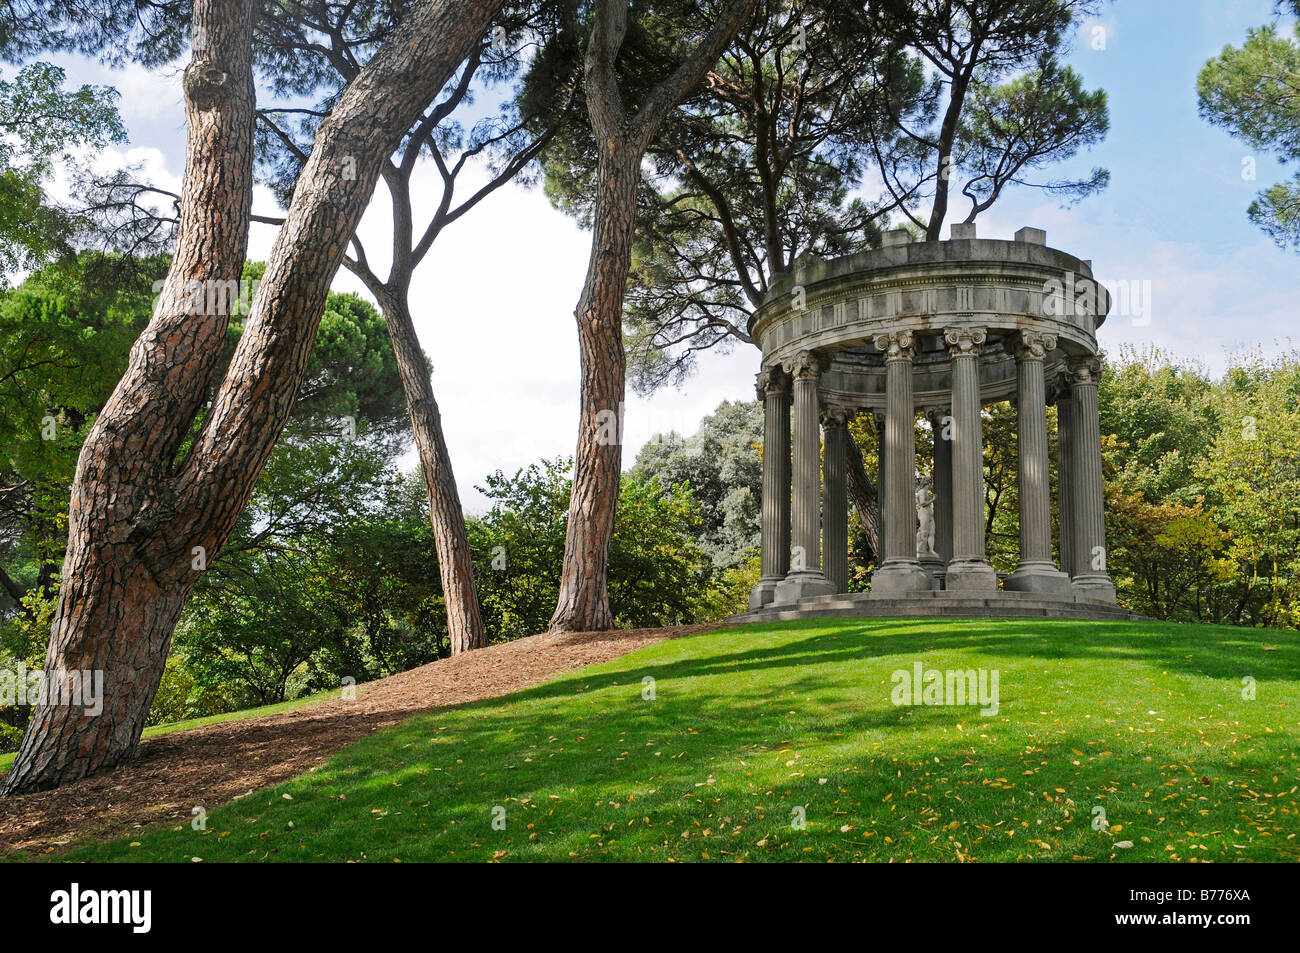 Small temple, El Capricho de la Alameda de Osuna, historic park, green, Madrid, Spain, Europe Stock Photo